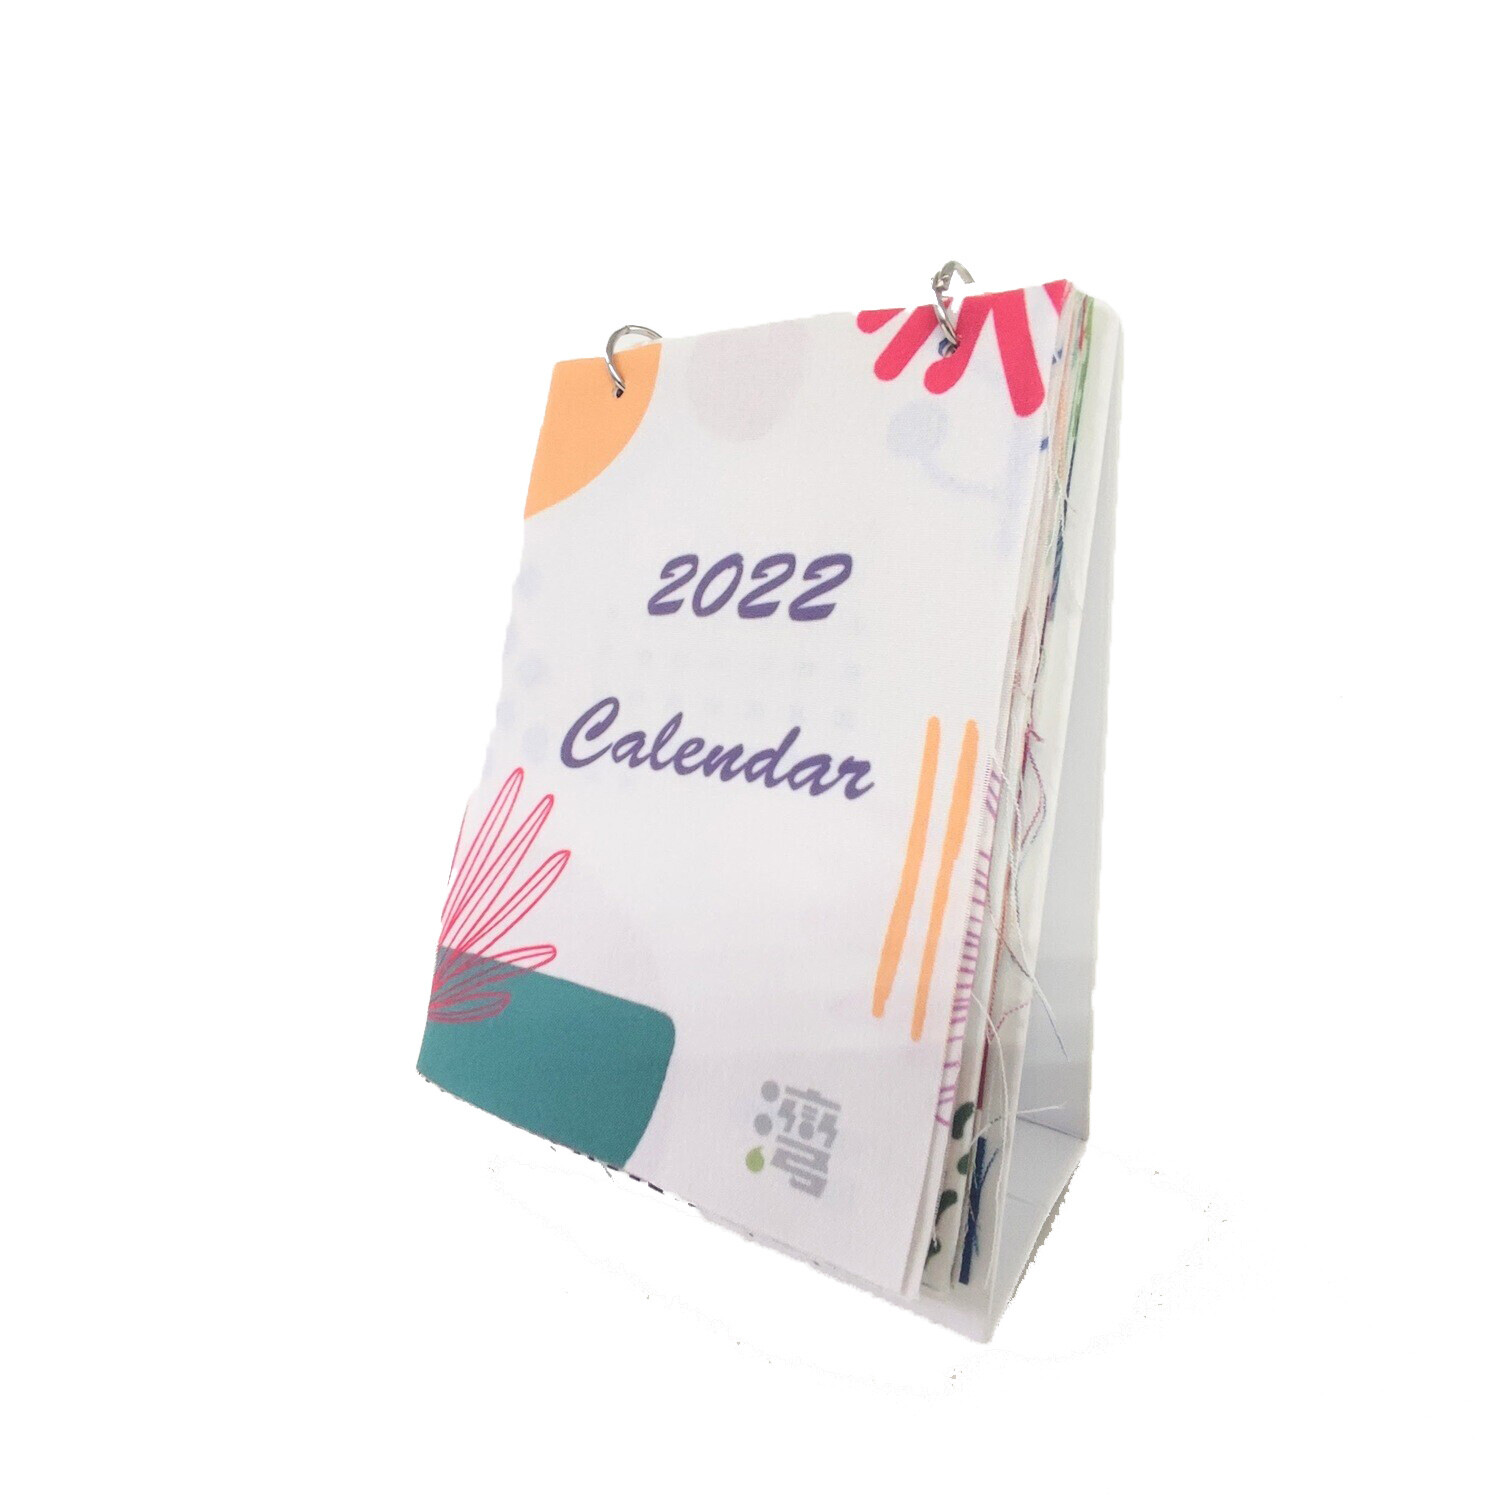 現貨 2022年布桌曆 範例1